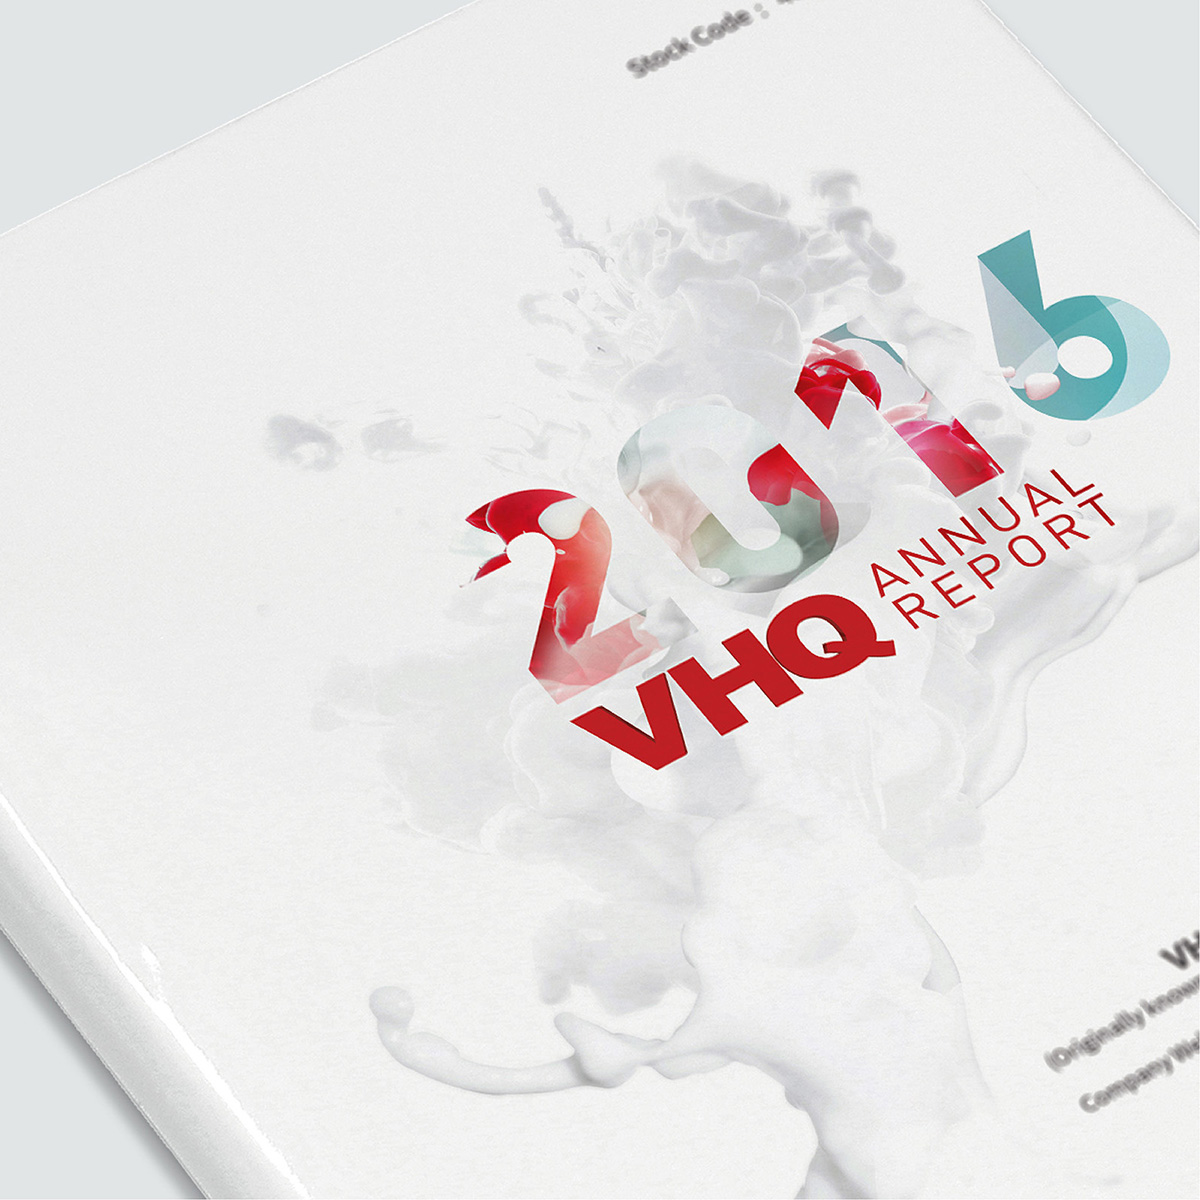 VHQ Media annual report cover design